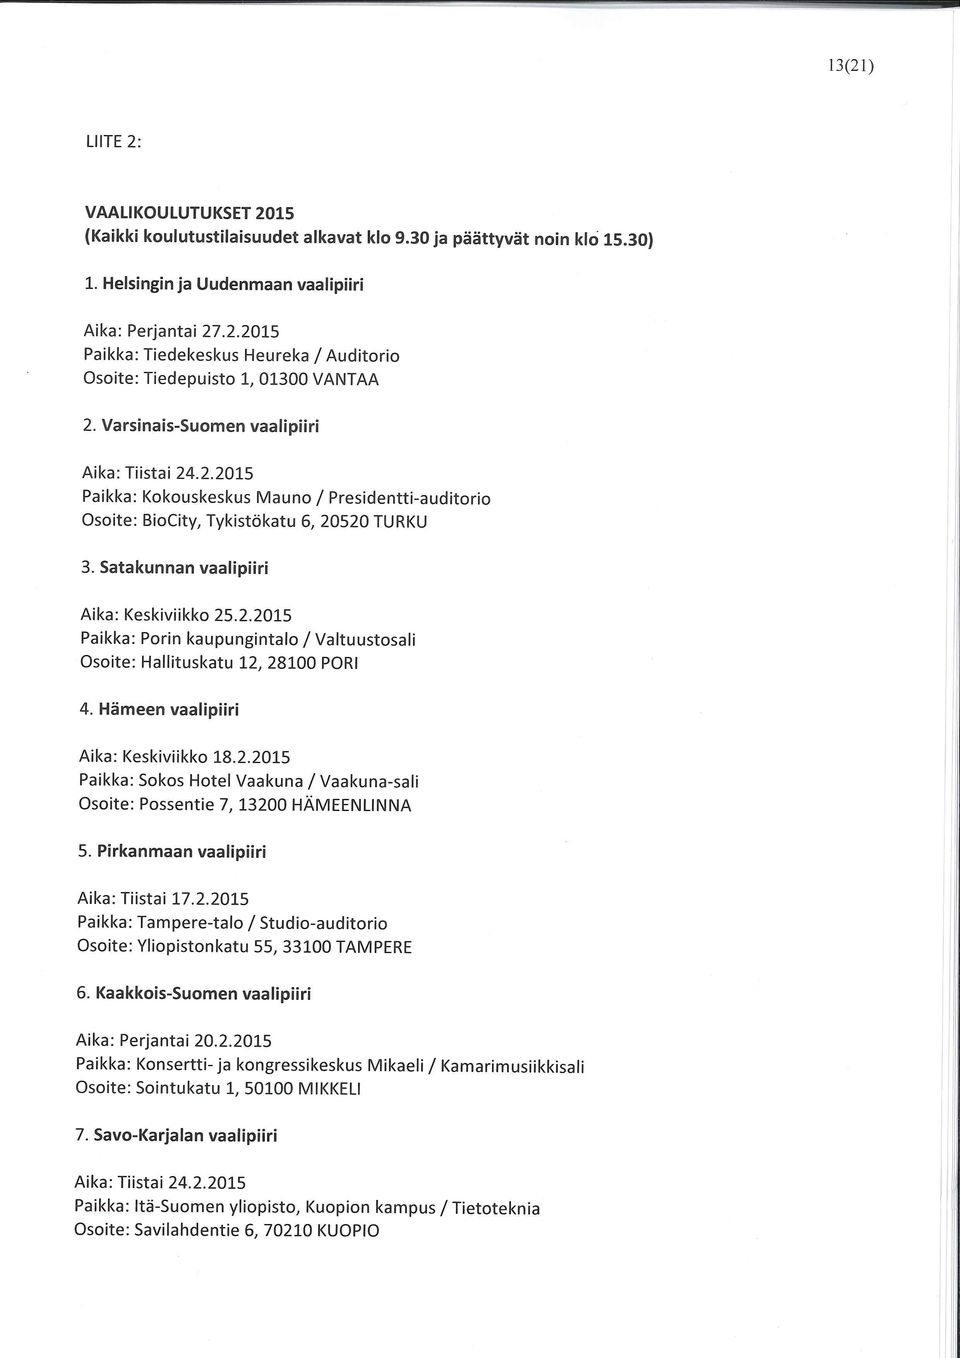 Hämeen vaalipiiri Aika: Keskiviikko 18.2.2015 Paikka: Sokos Hotel Vaakuna /Vaakuna-sali Osoite: Possentie 7, 13200 HÄMEENLINNA 5. Pirkanmaan vaalipiiri Aika: Tiistai 17.2.2015 Paikka: Tampere-talo / Studio-auditorio Osoite: Yliopistonkatu 55, 33100 TAMPERE 6.